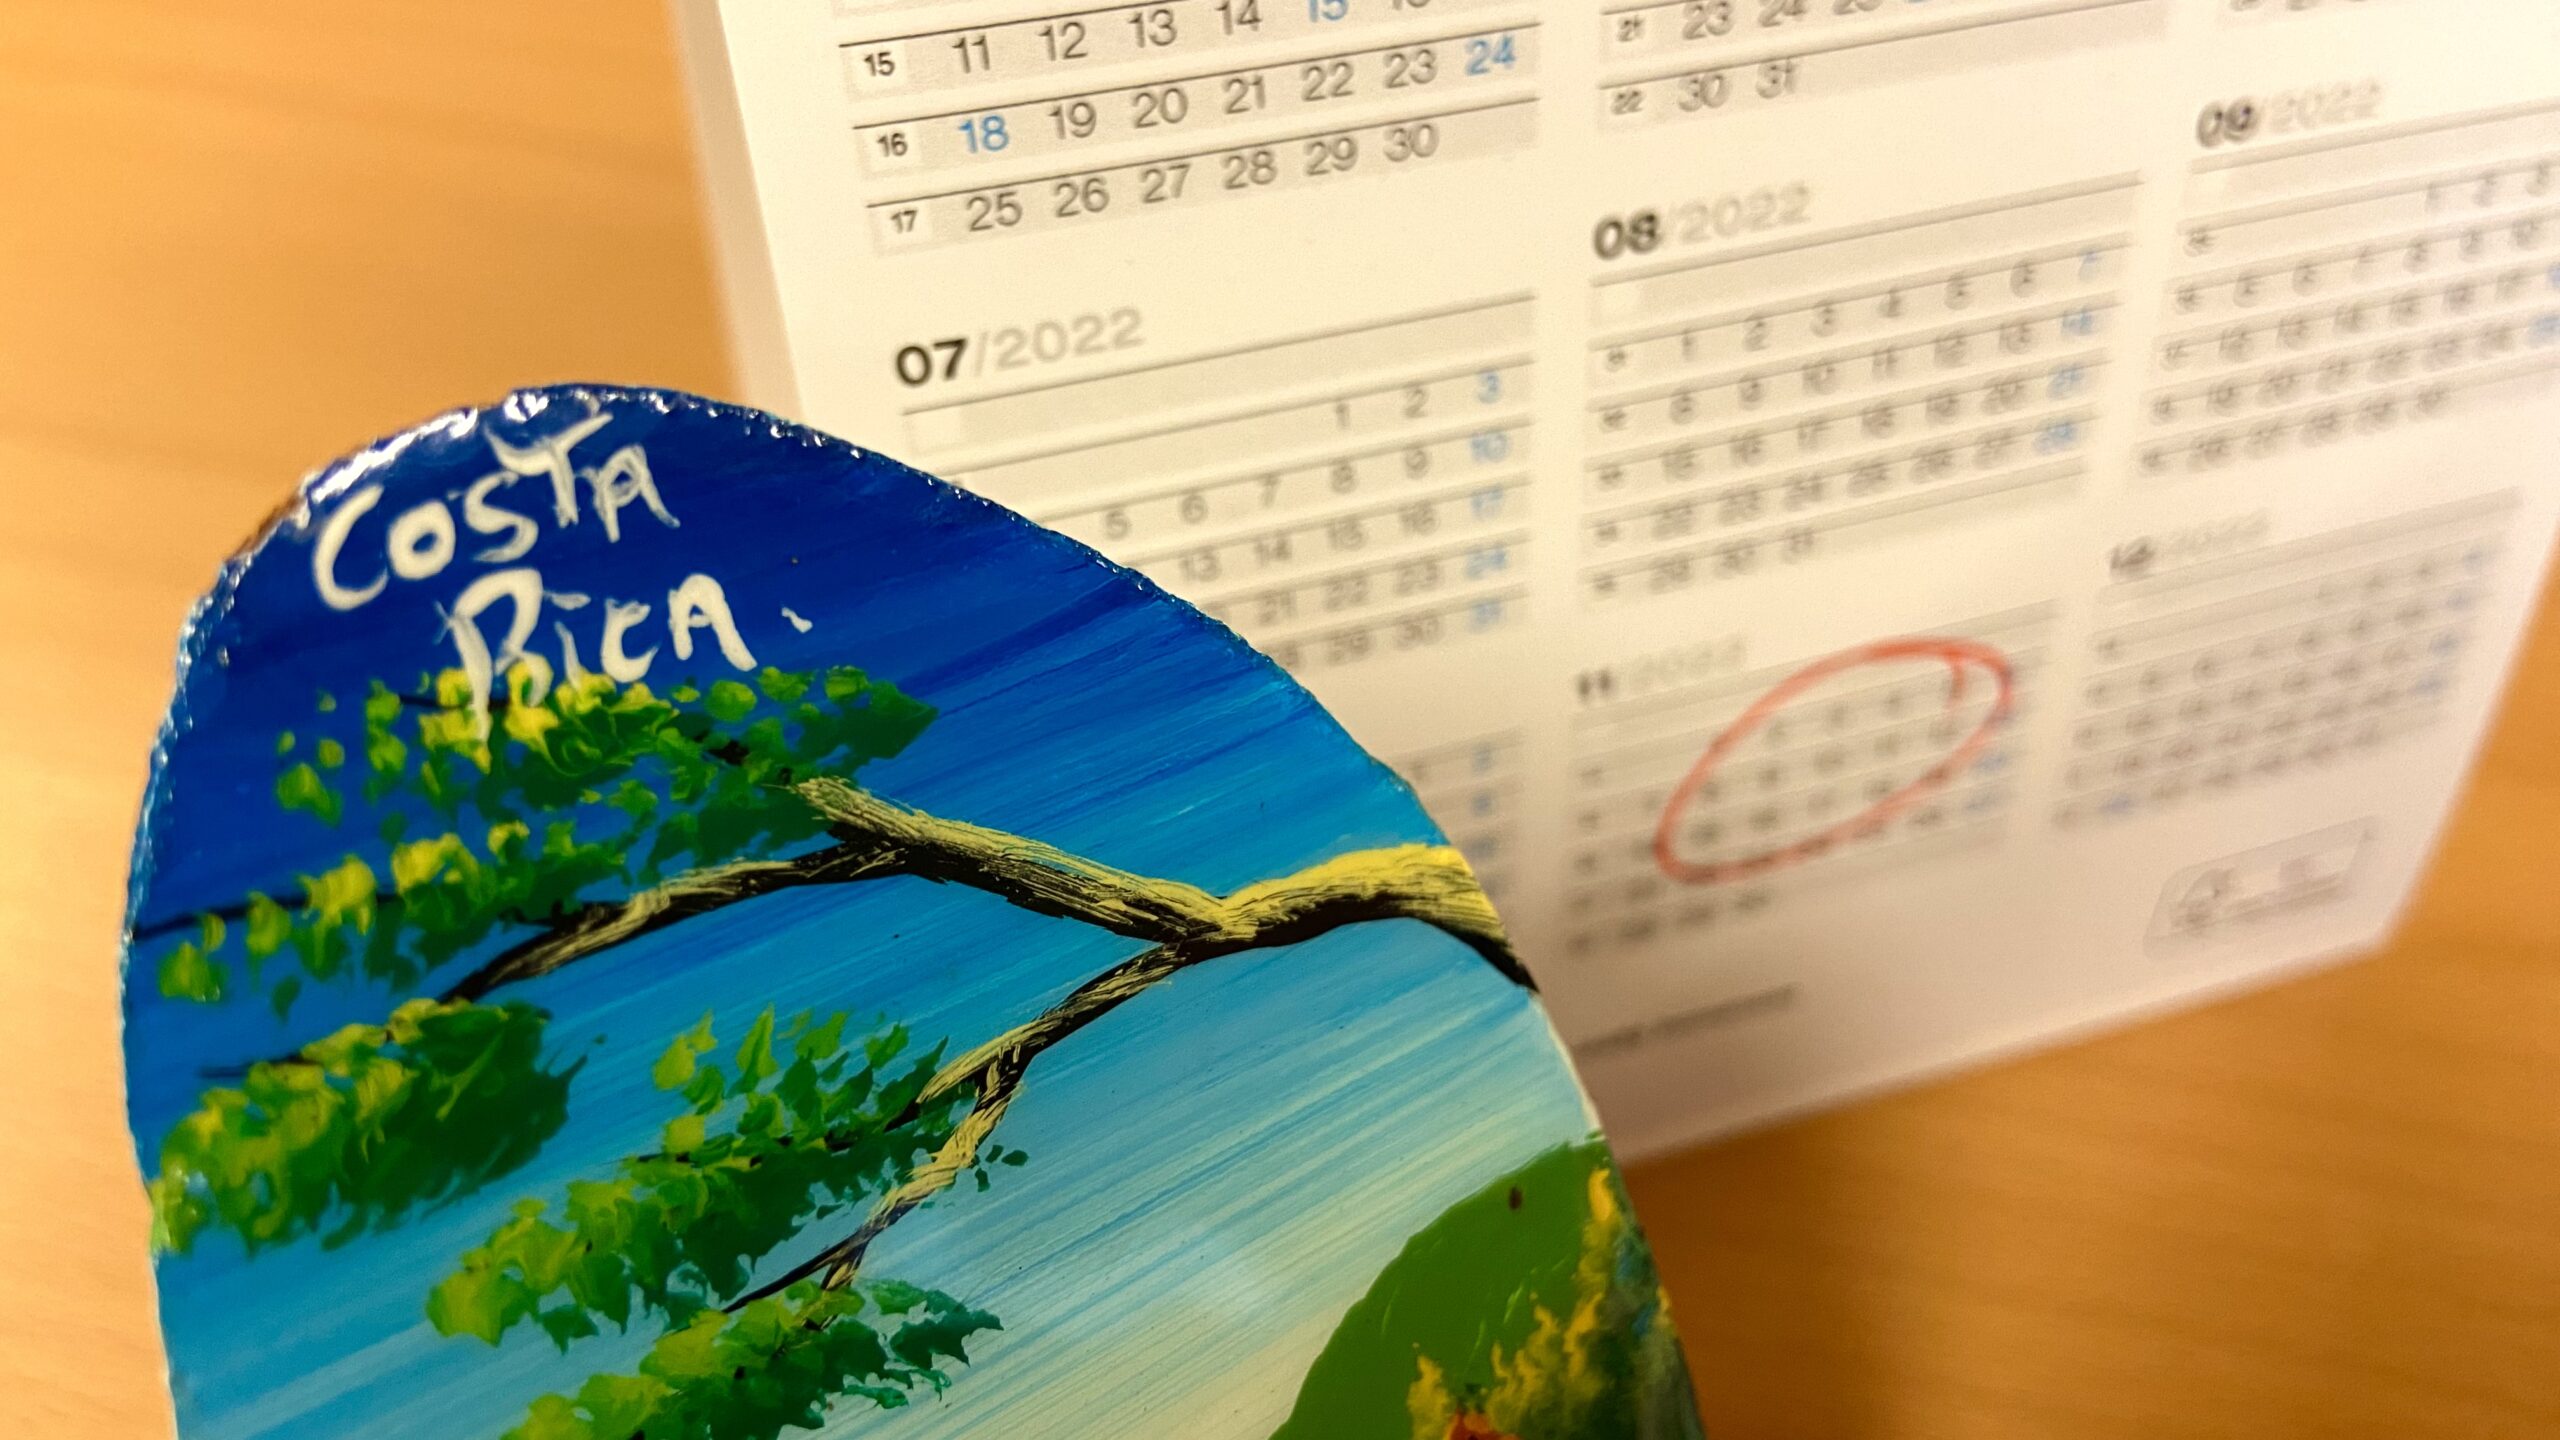 kulturelle-feste-und-veranstaltungen-costa-rica-kalender